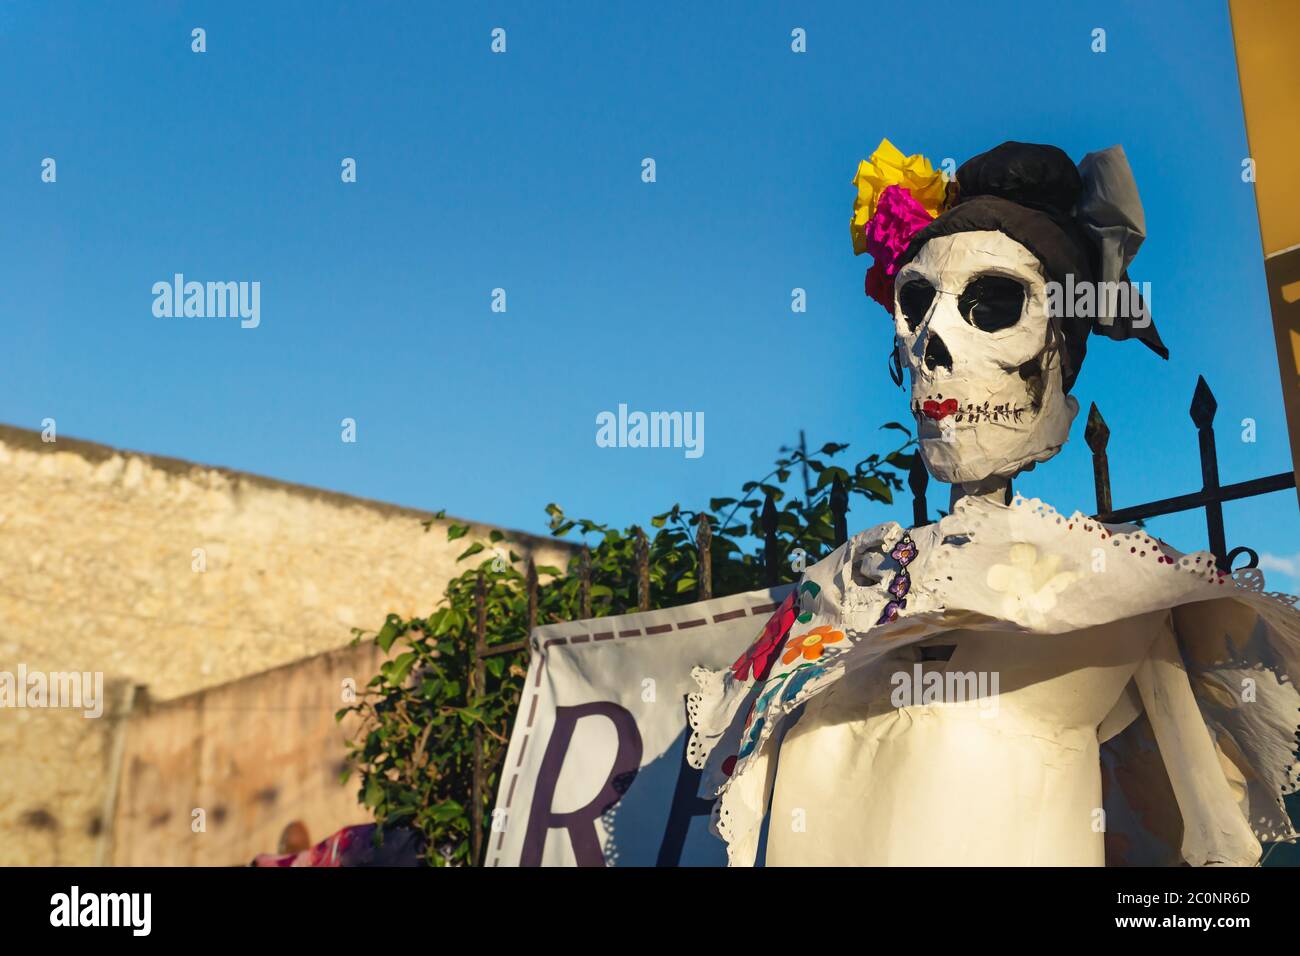 Cráneos de la Catrina como decoración para la celebración del día de los muertos 'día de los muertos', Mérida, Yucatán, México Foto de stock